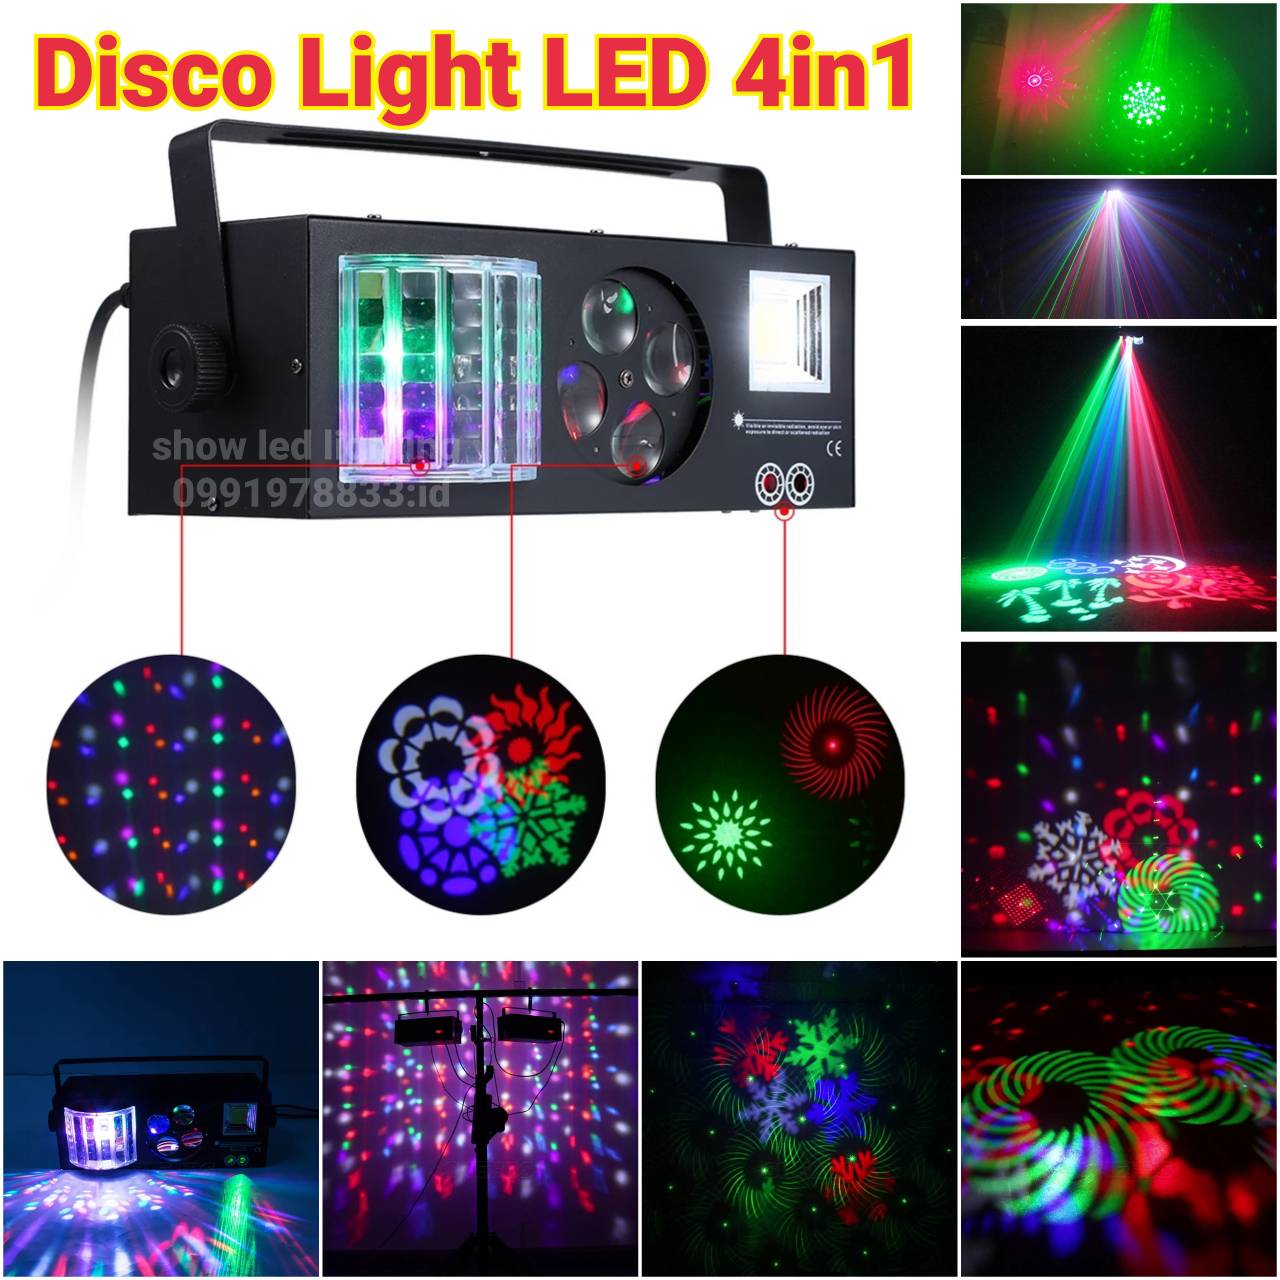 ไฟดิสโก้ 4in1 laser led PARTY LIGHT ไฟดิสโก้ ไฟดิสโก้เทค ไฟ Laser light ไฟเทค ปาร์ตี้ ไฟเวที ดิสโก้ผับ ไฟเวทีแสงสีเสียง